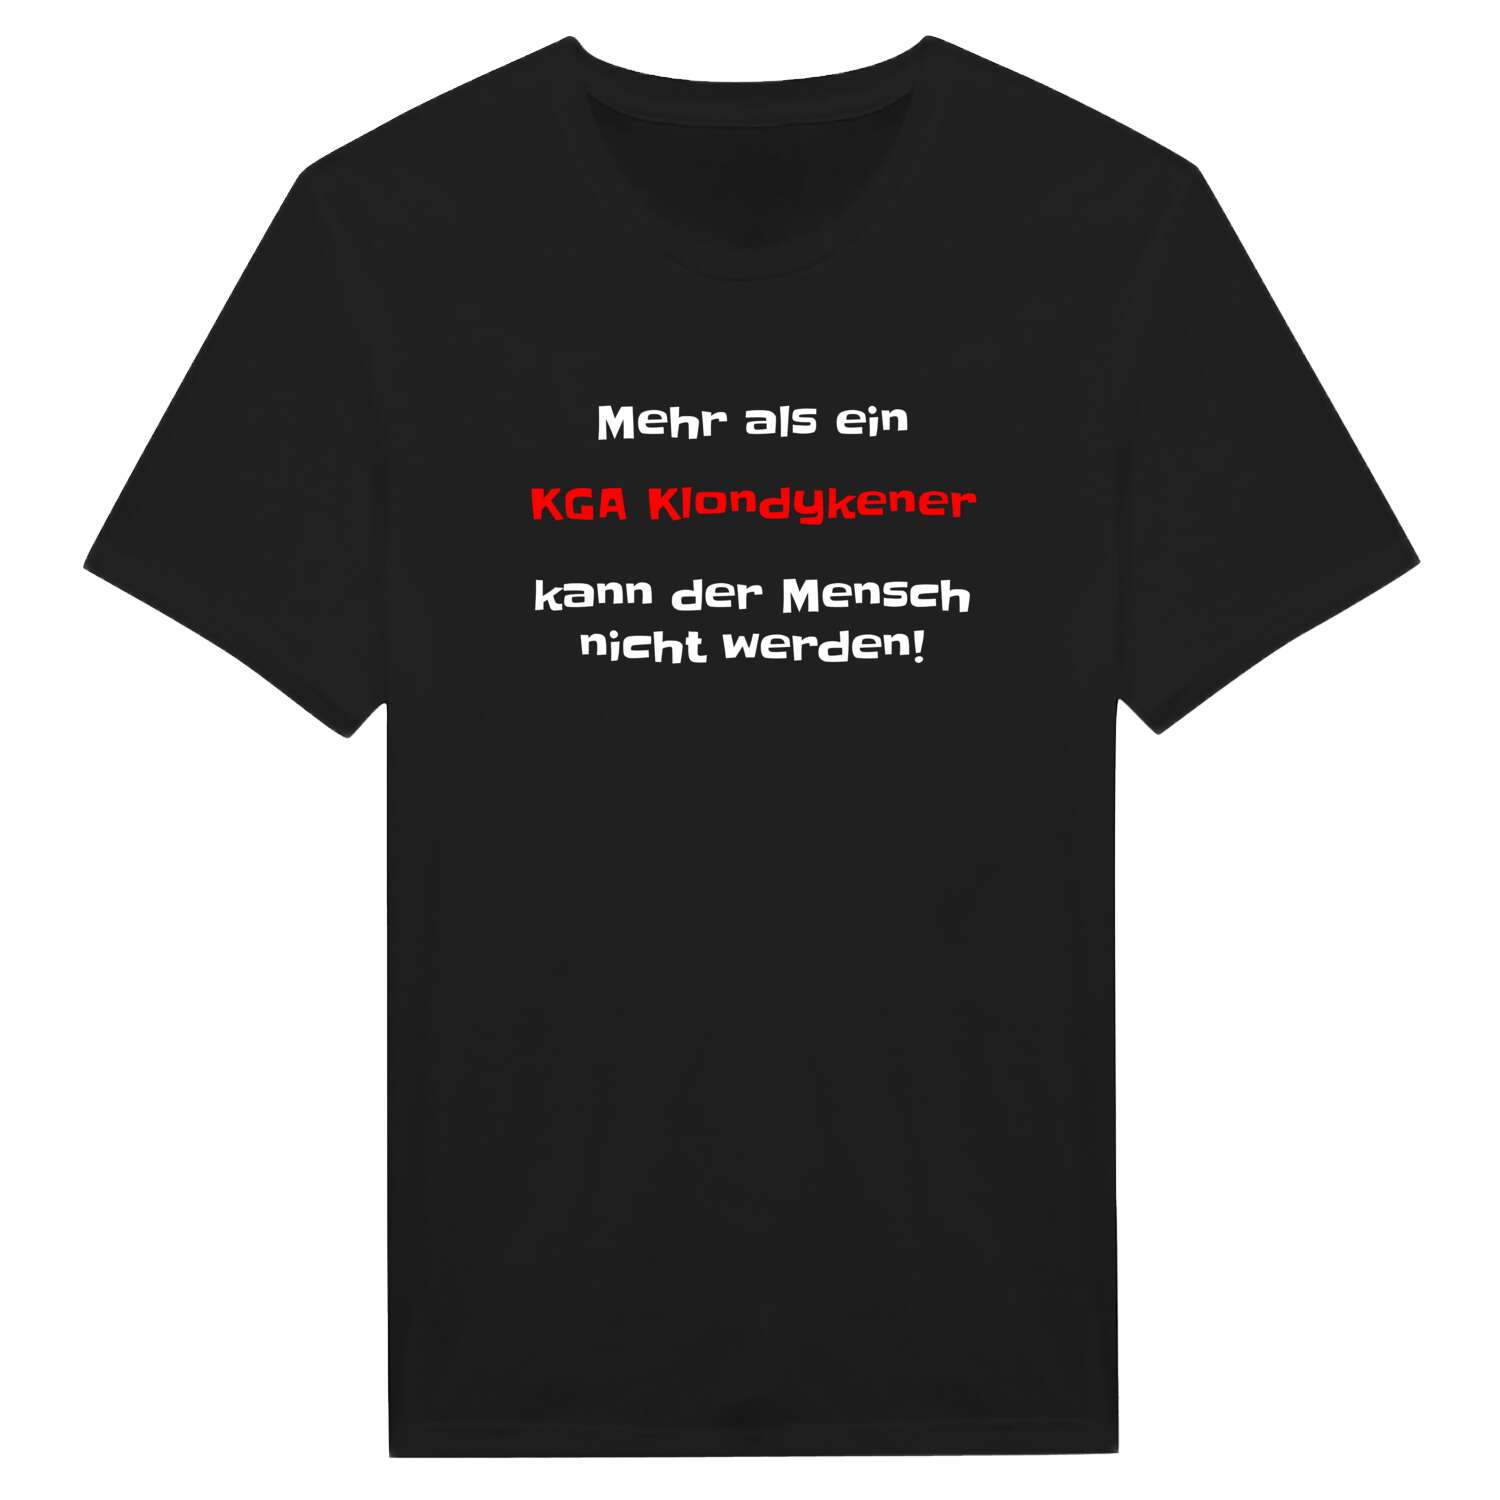 KGA Klondyke T-Shirt »Mehr als ein«